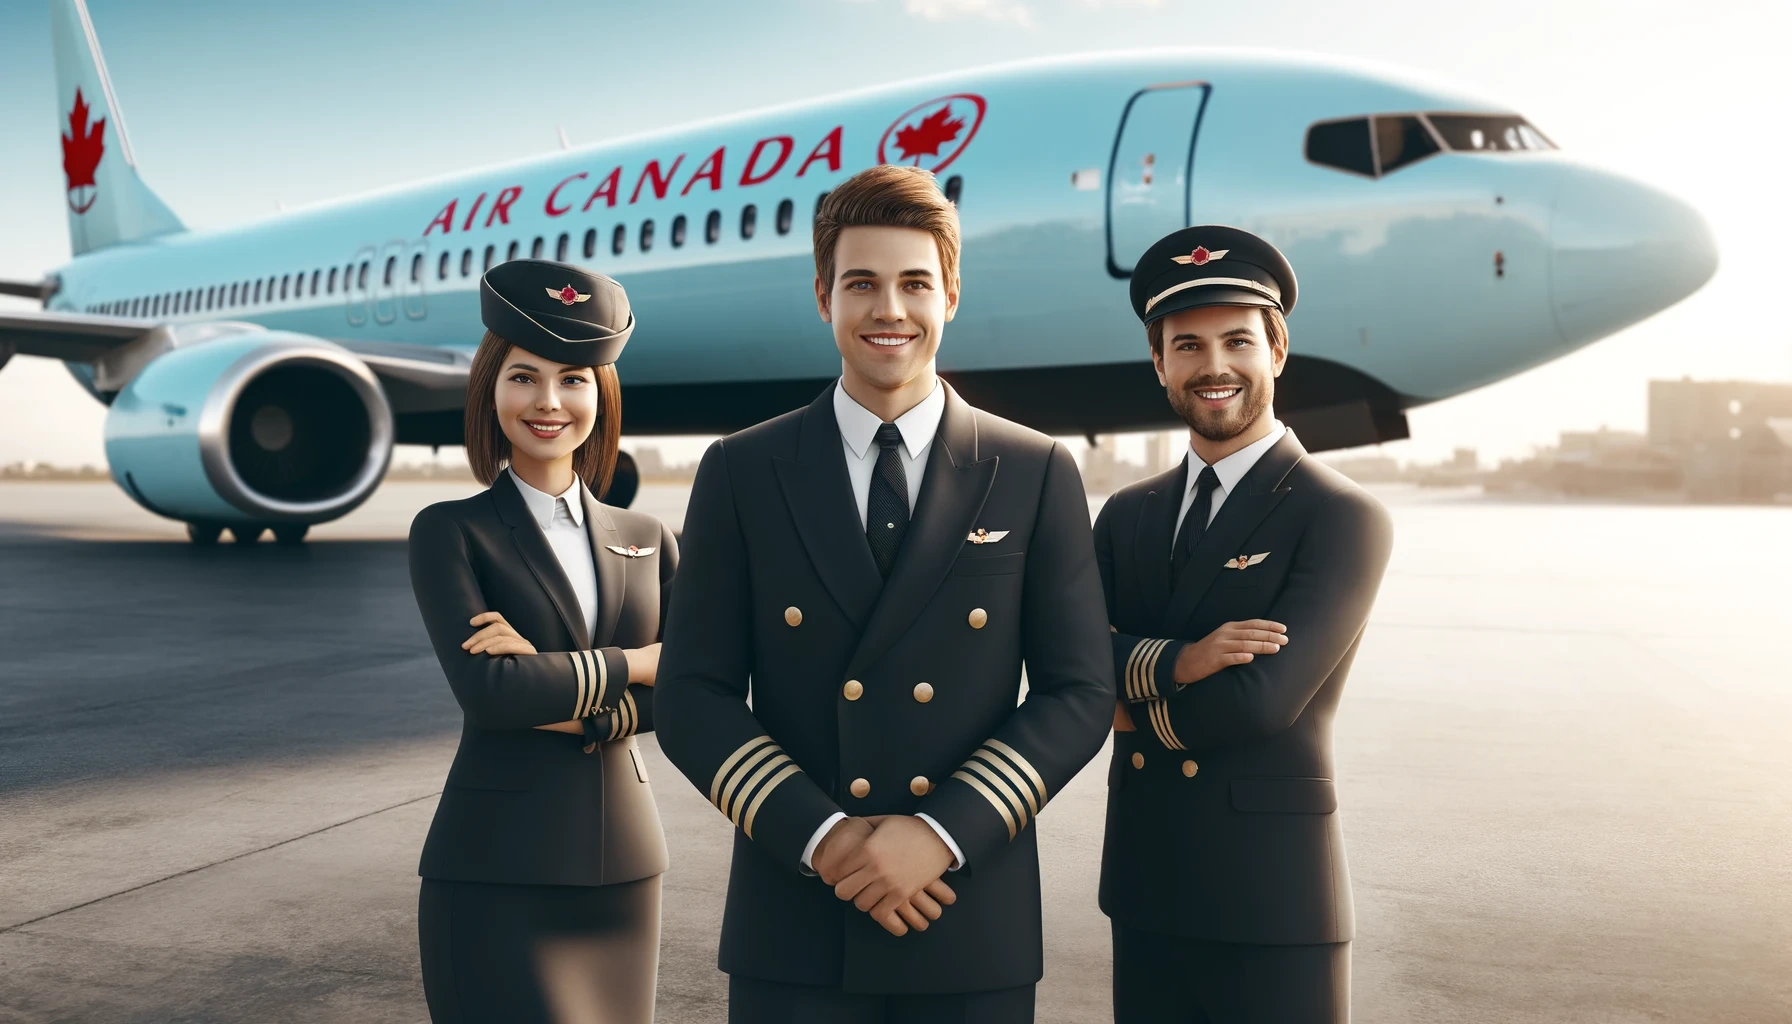 Ofertas de trabajo en Air Canada: Cómo aplicar